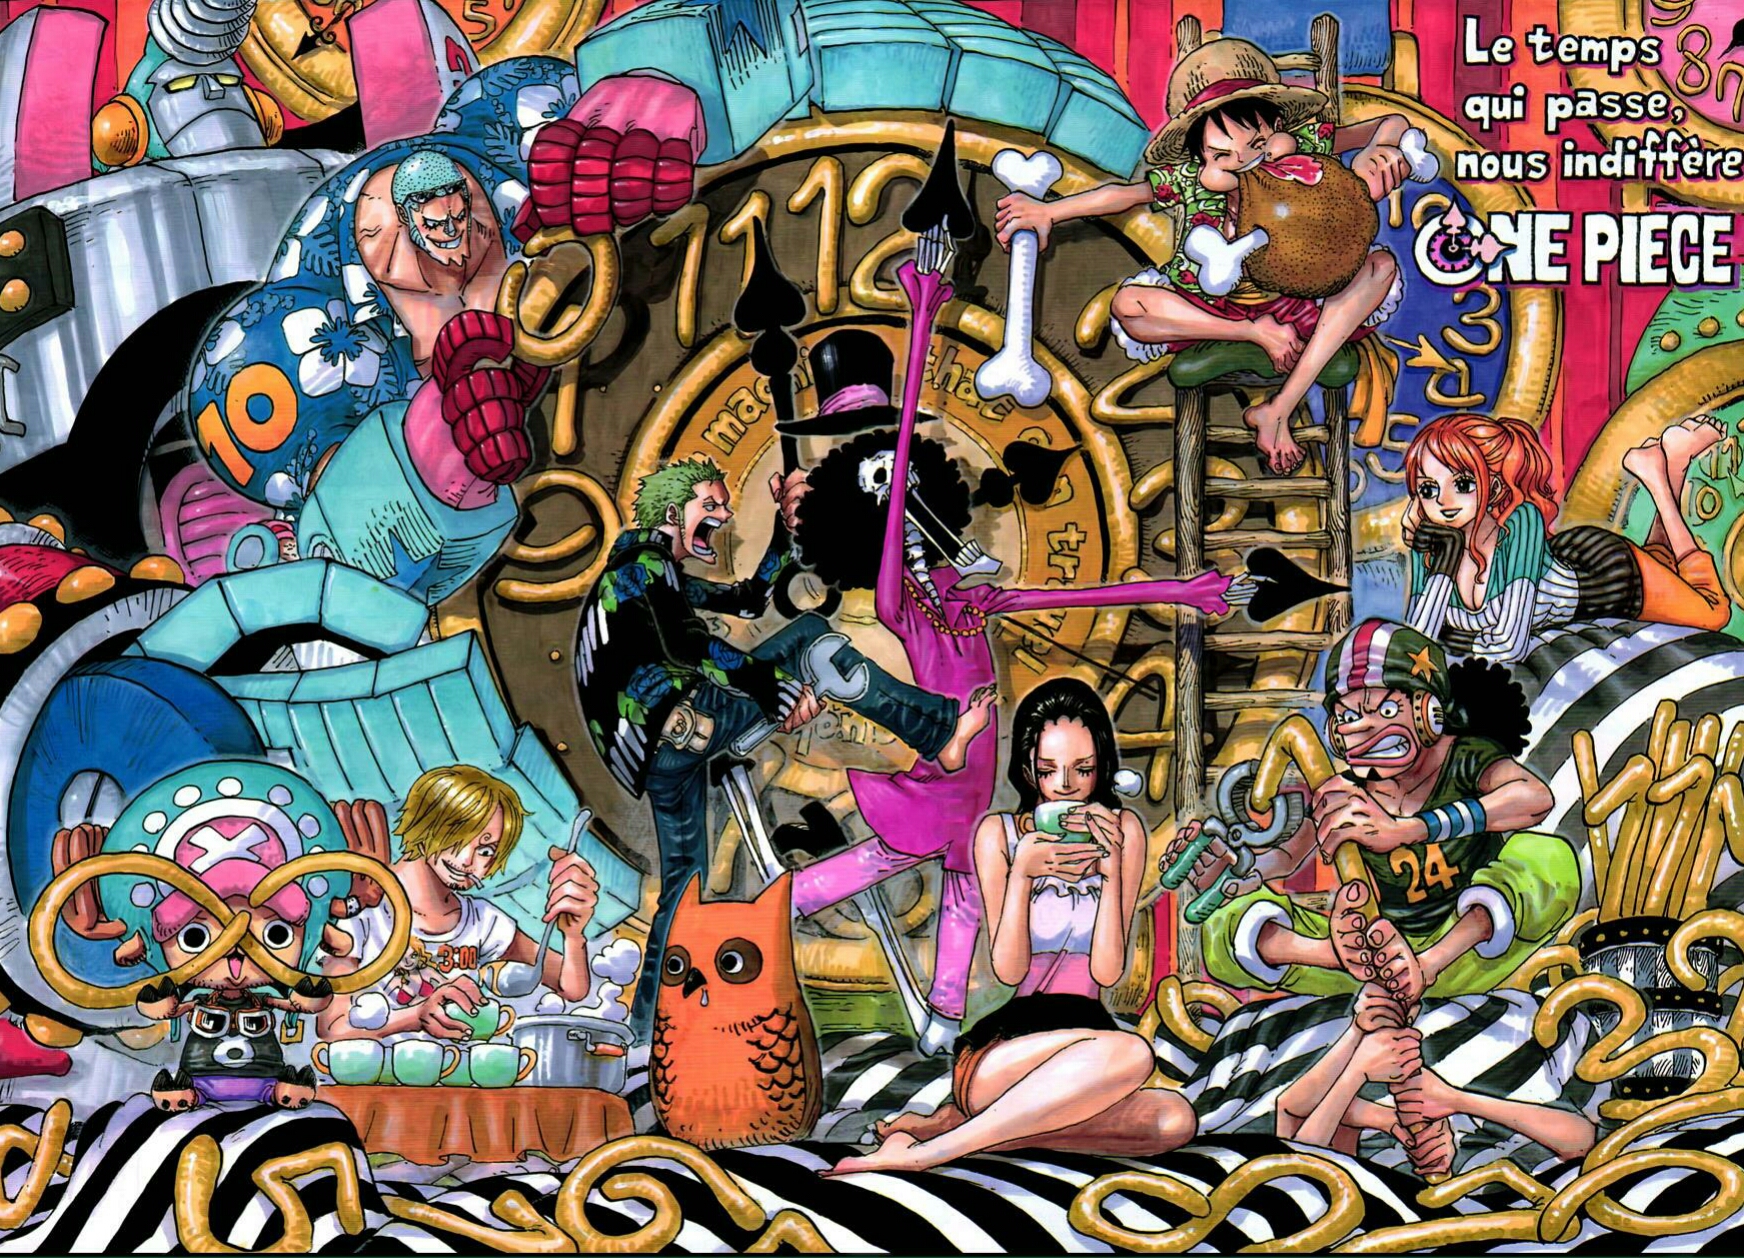 straw hats - One Piece Wallpaper (41474167) - Fanpop